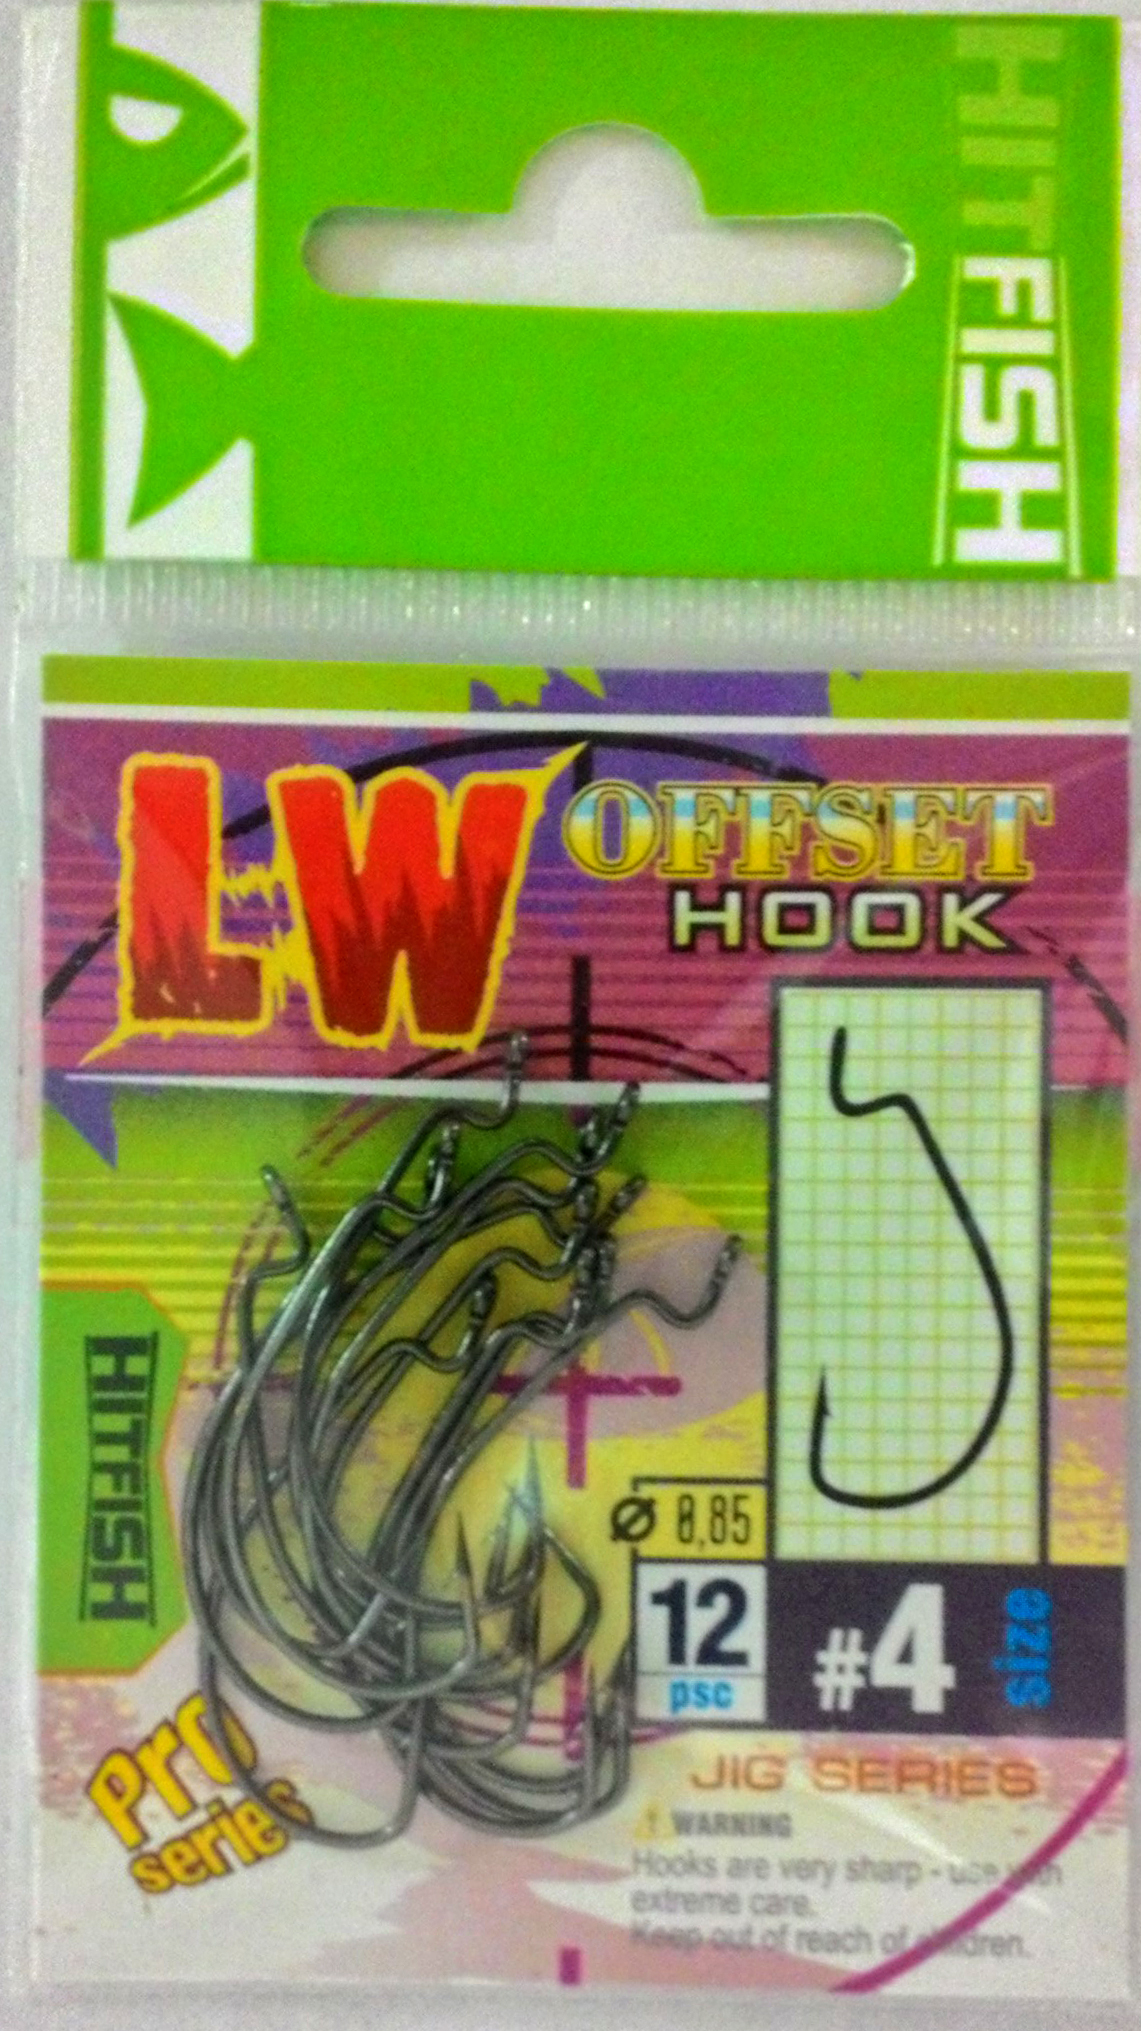 картинка Офсетный крючок HITFISH LW Offset Hook  от производителя Hitfish